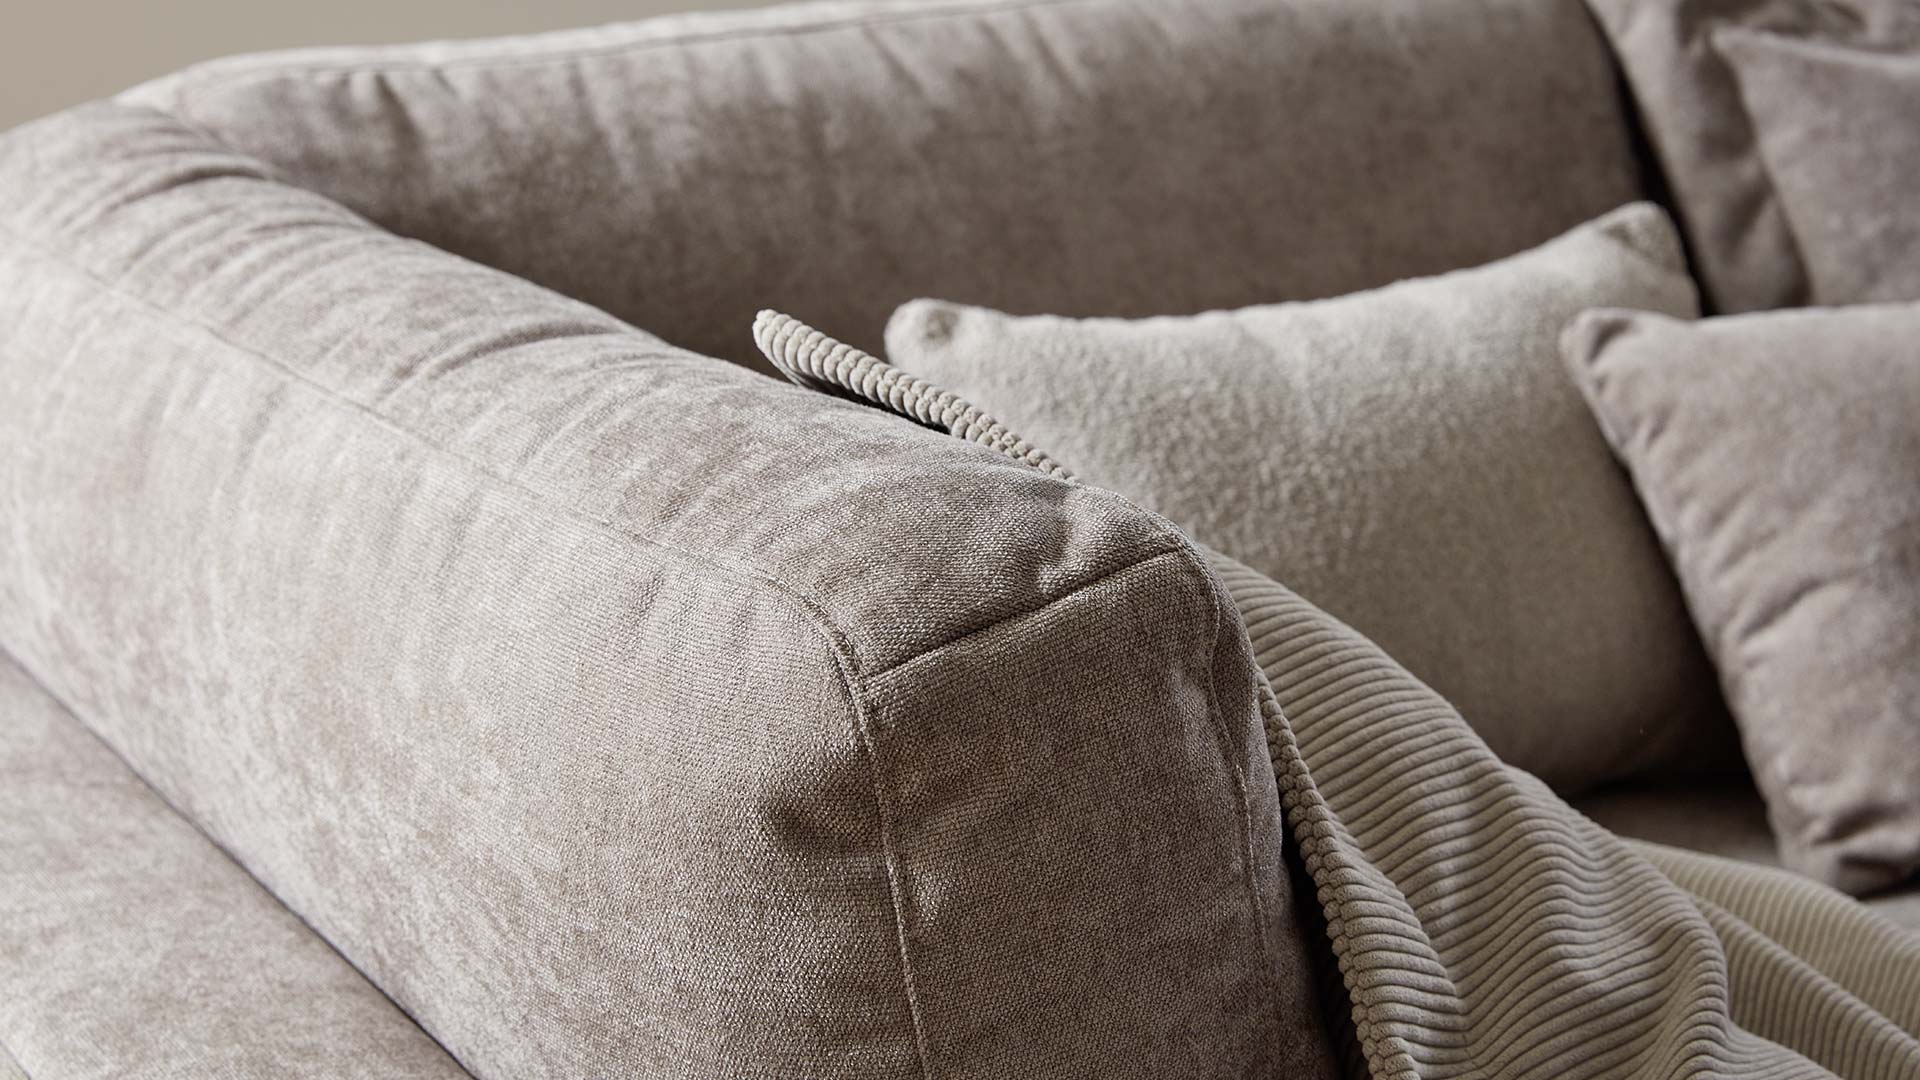 couchgarnitur-couch-sofa-ohne-fuesse-stoff-beige-braun-grau-holztablett-hocker-polstermoebel-polstergarnitur